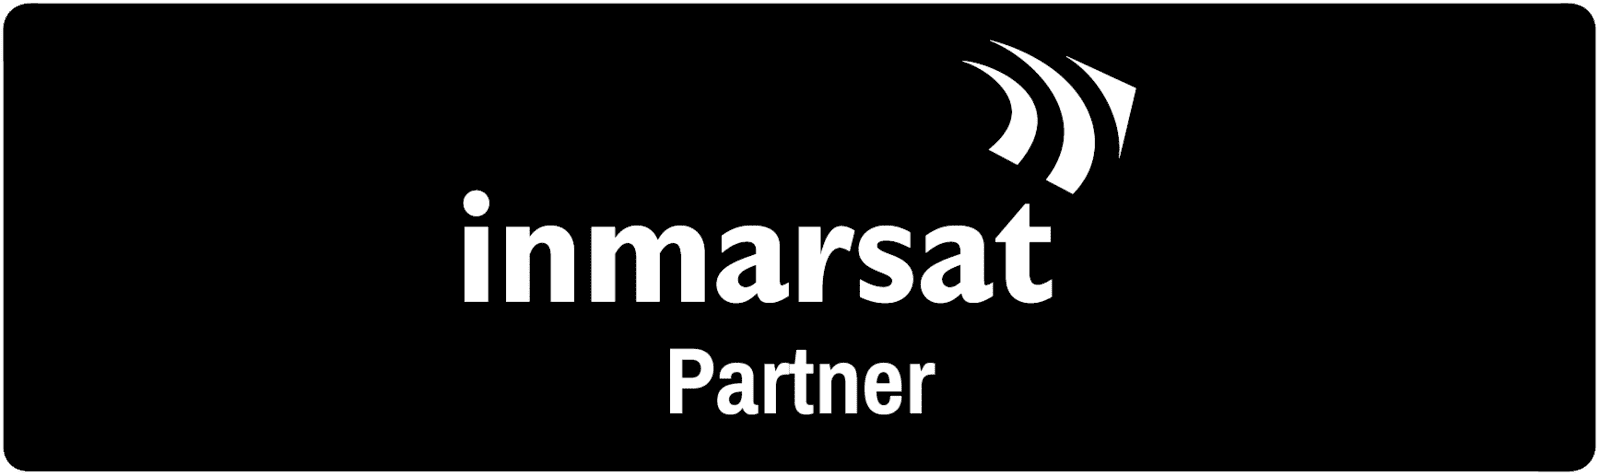 Qntrol ist Inmarsat Partner